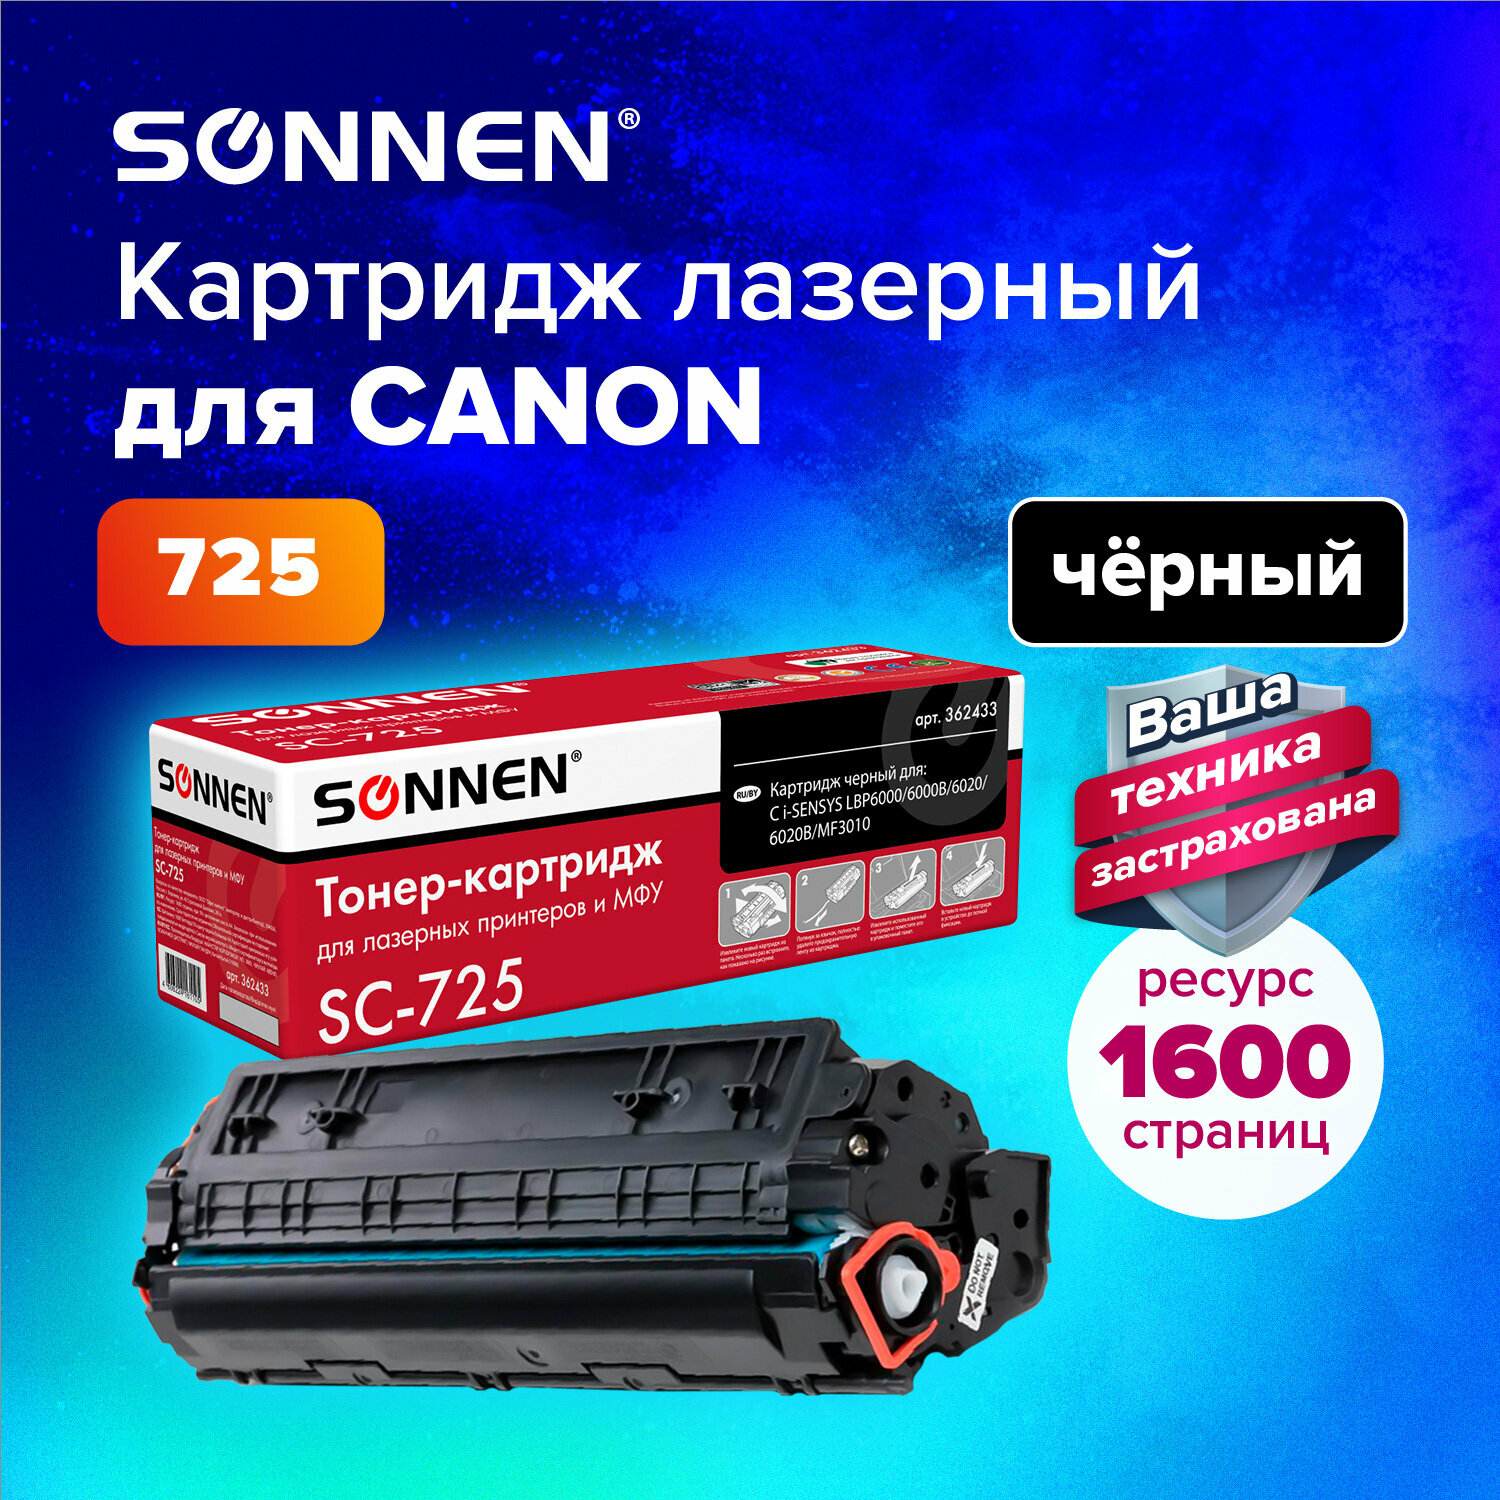 Тонер-картридж для принтера лазерный совместимый Sonnen (SC-725) для Canon Lbp6000/lbp6020/lbp6020b, ресурс 1600 страниц, 362433